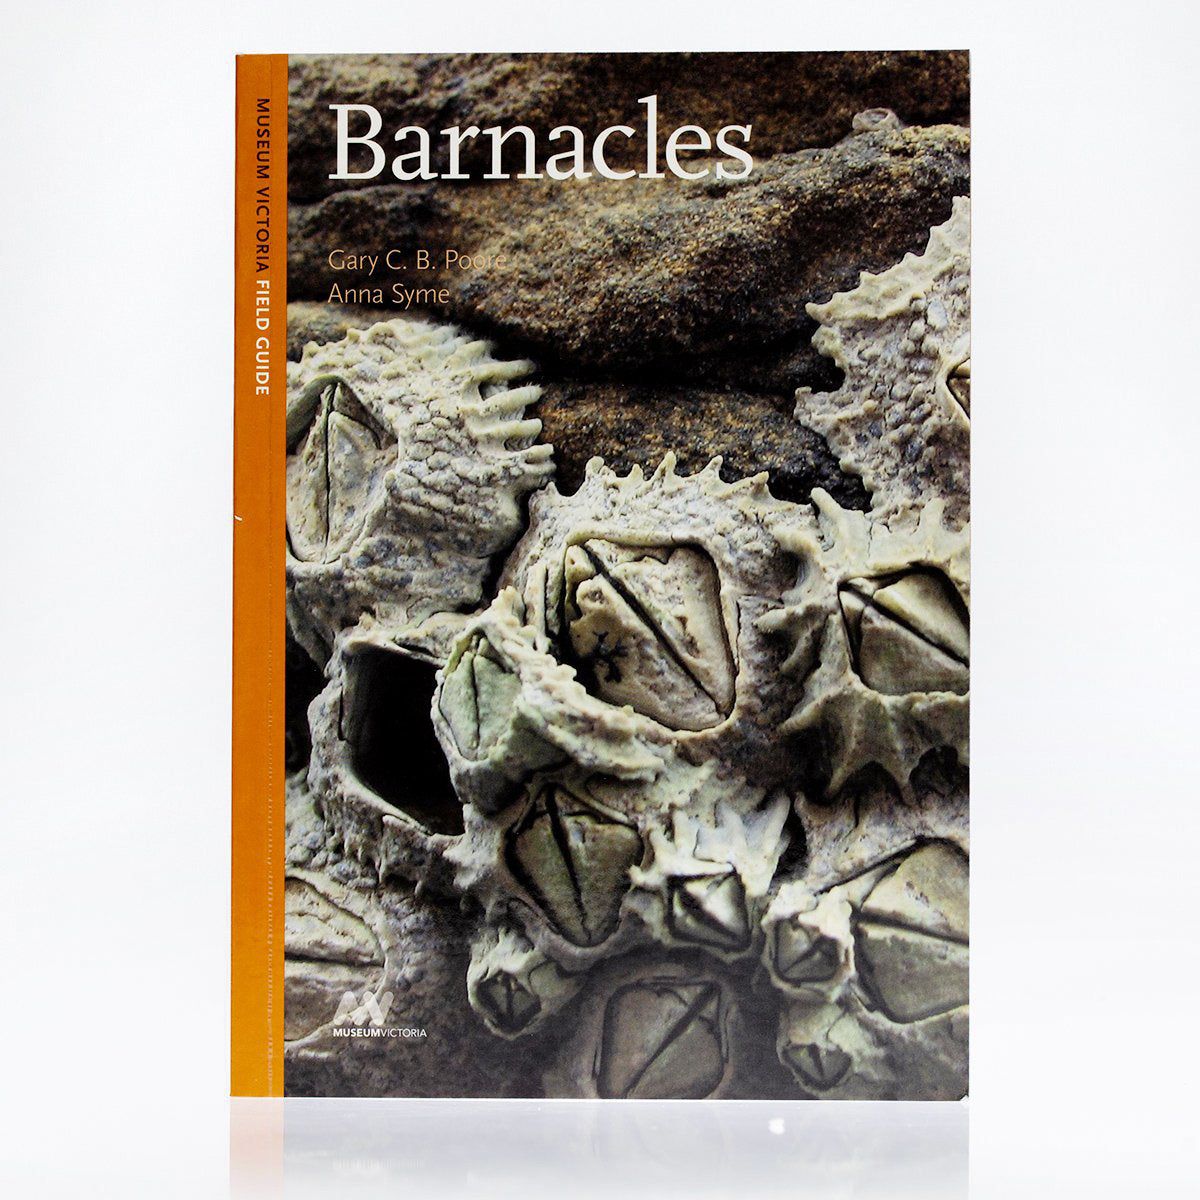 Barnacles1.jpg